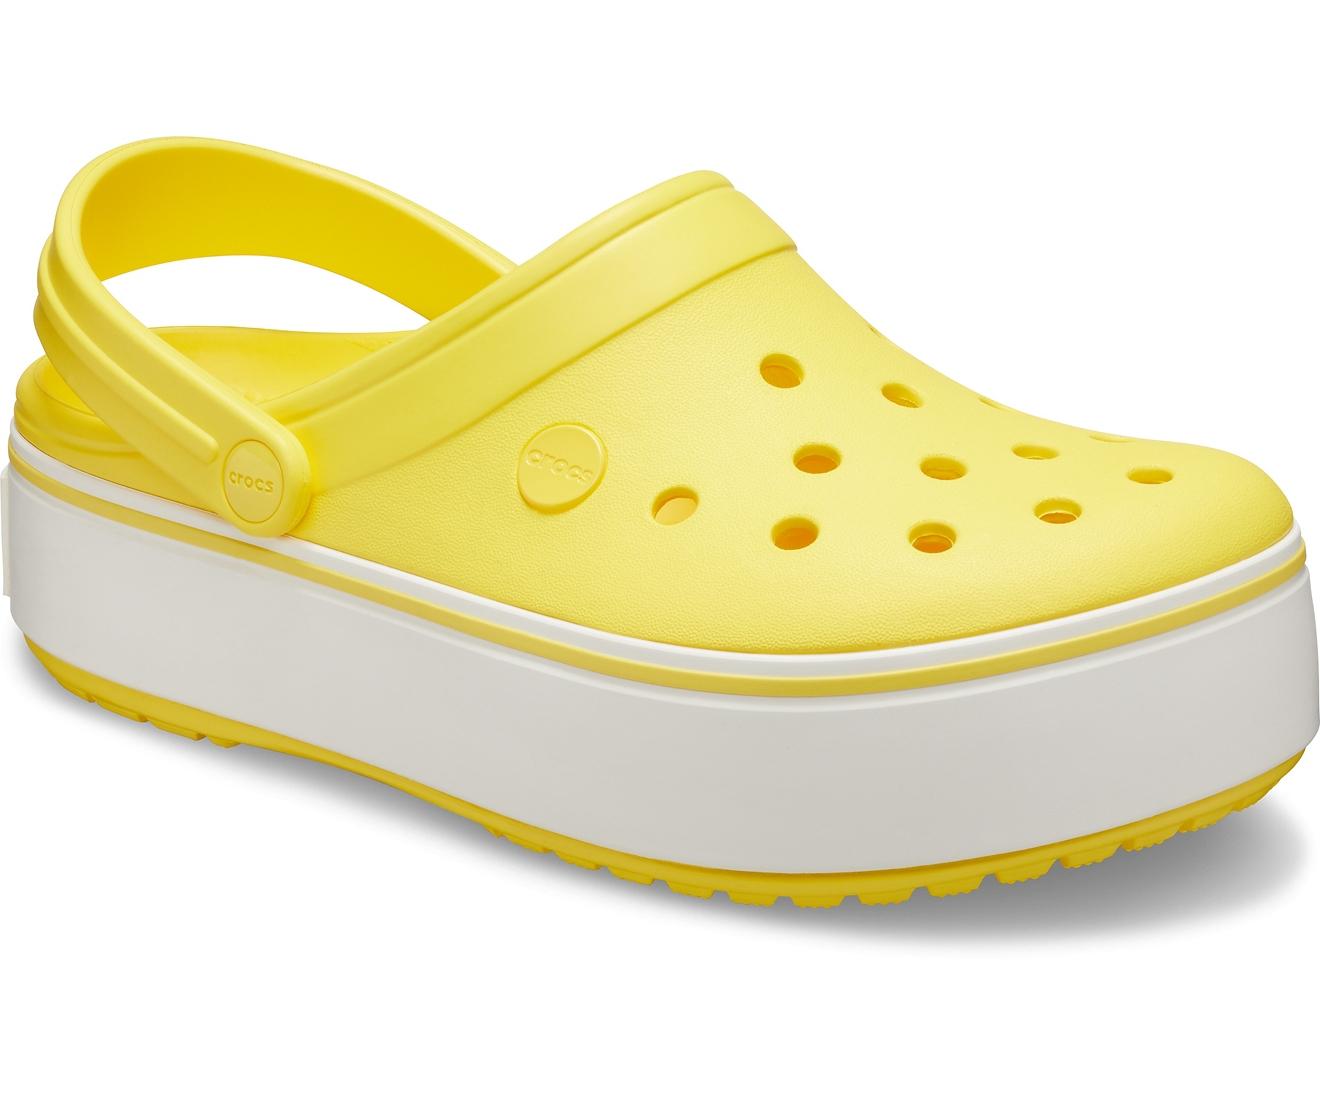 yellow crocs platform